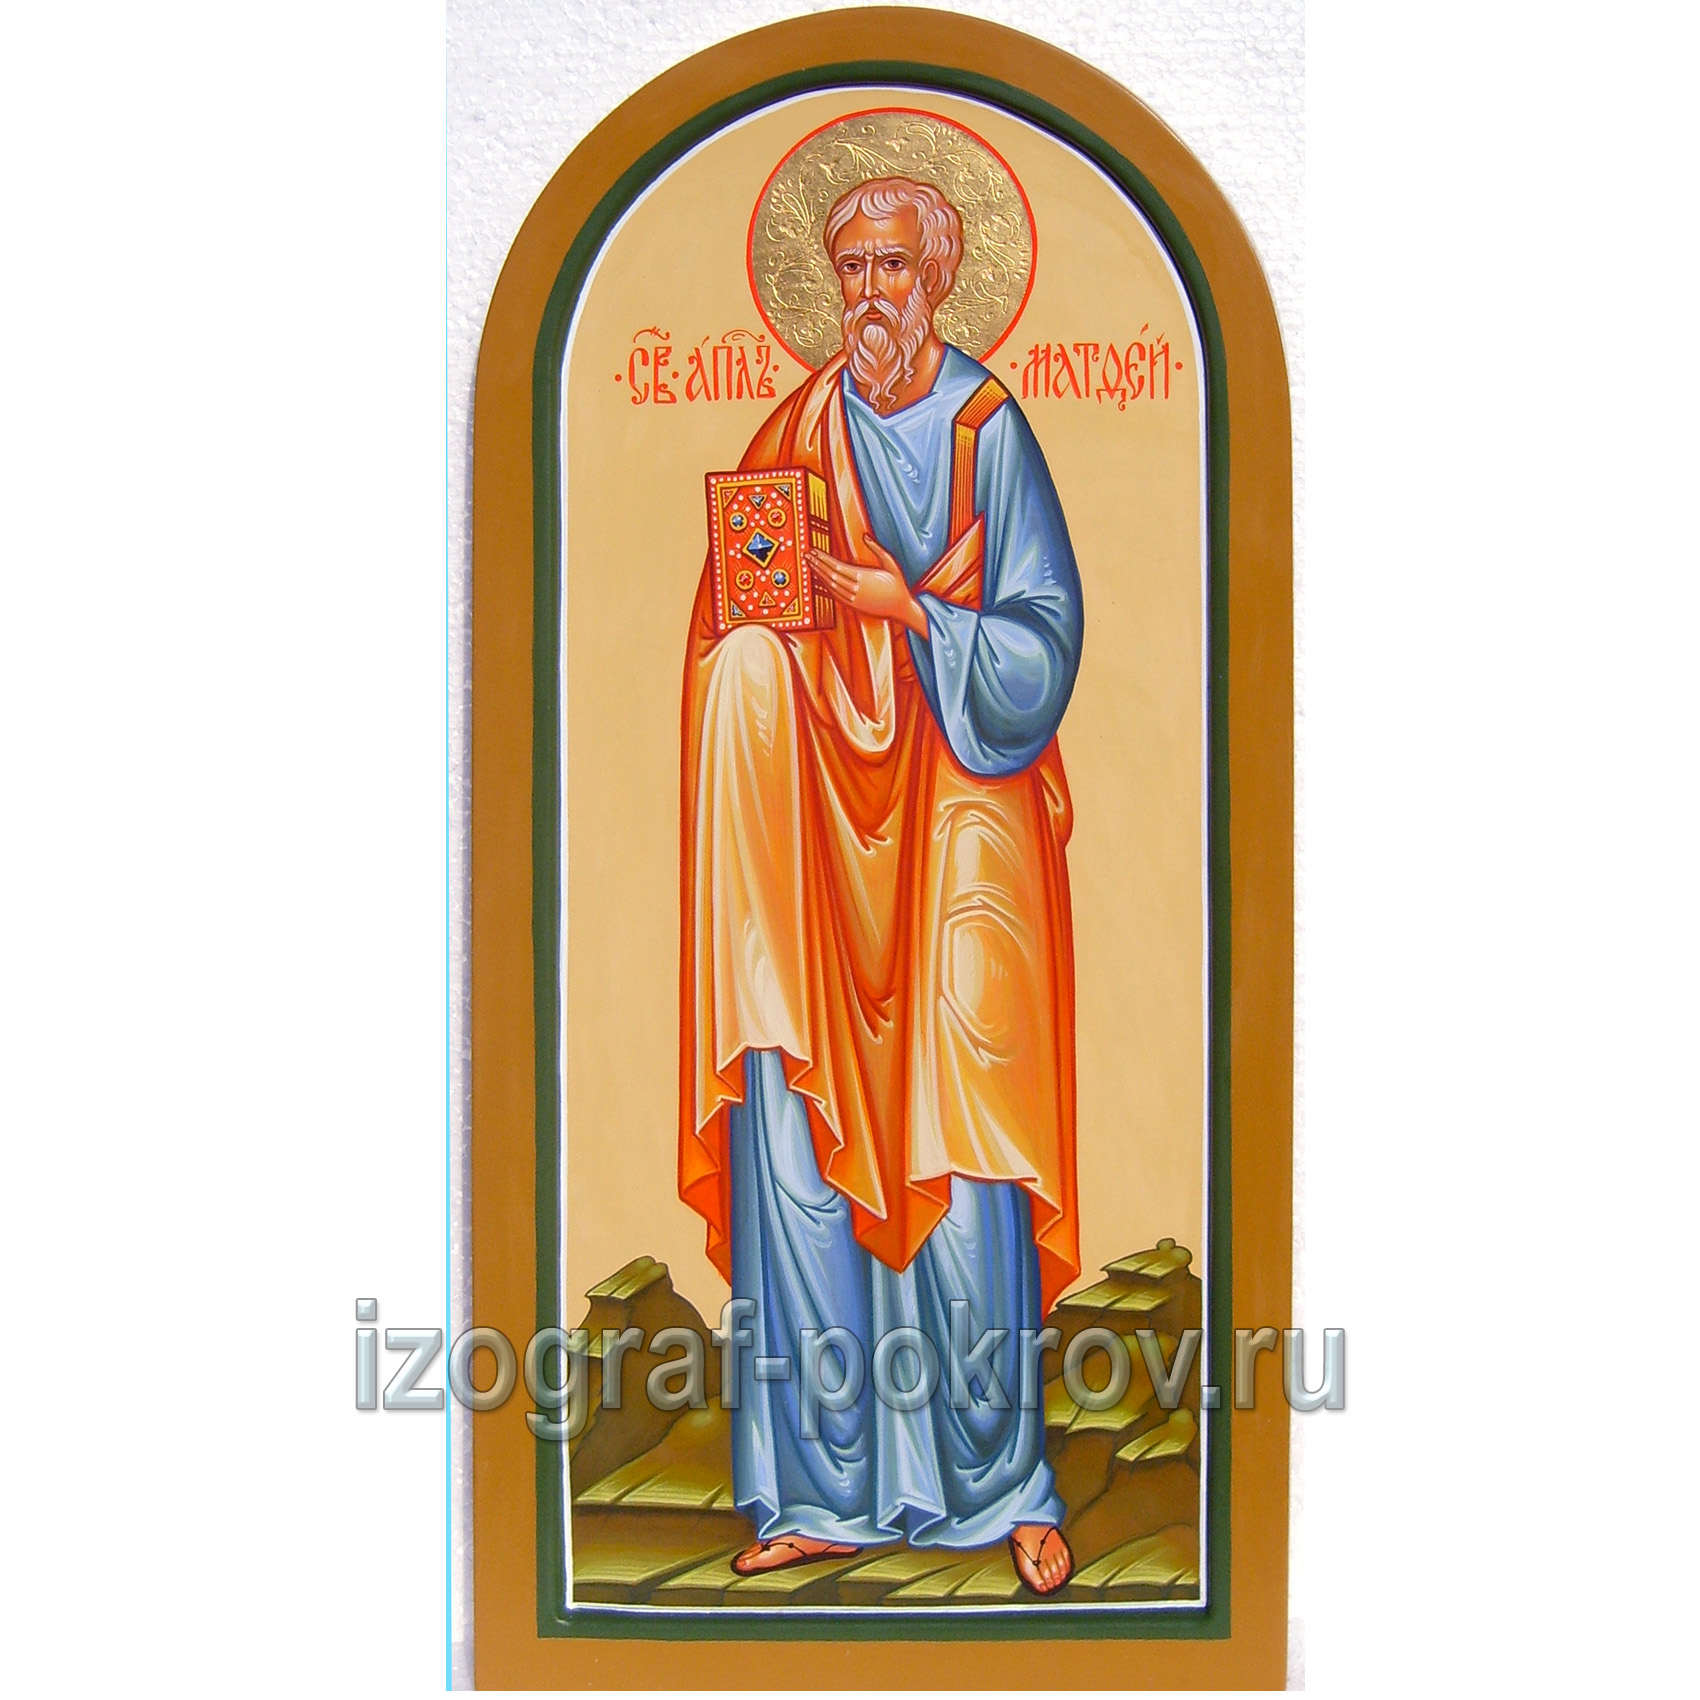 Икона Матфей (Левий) апостол. Иконописная Покров Константиновк